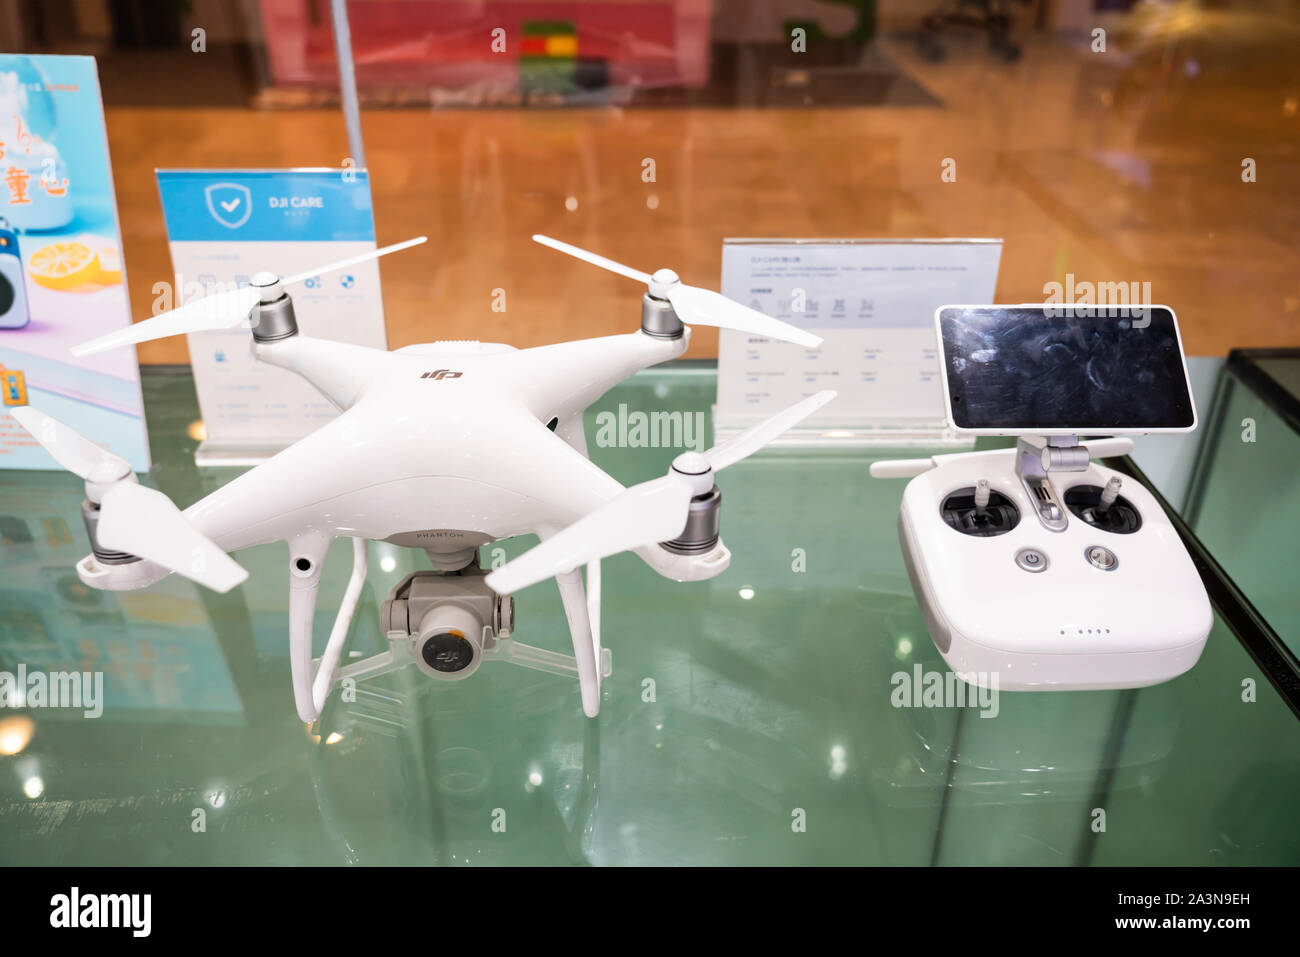 DJI Phantom 4 Pro drone affiché dans un magasin à Guangzhou. DJI Stock Alamy